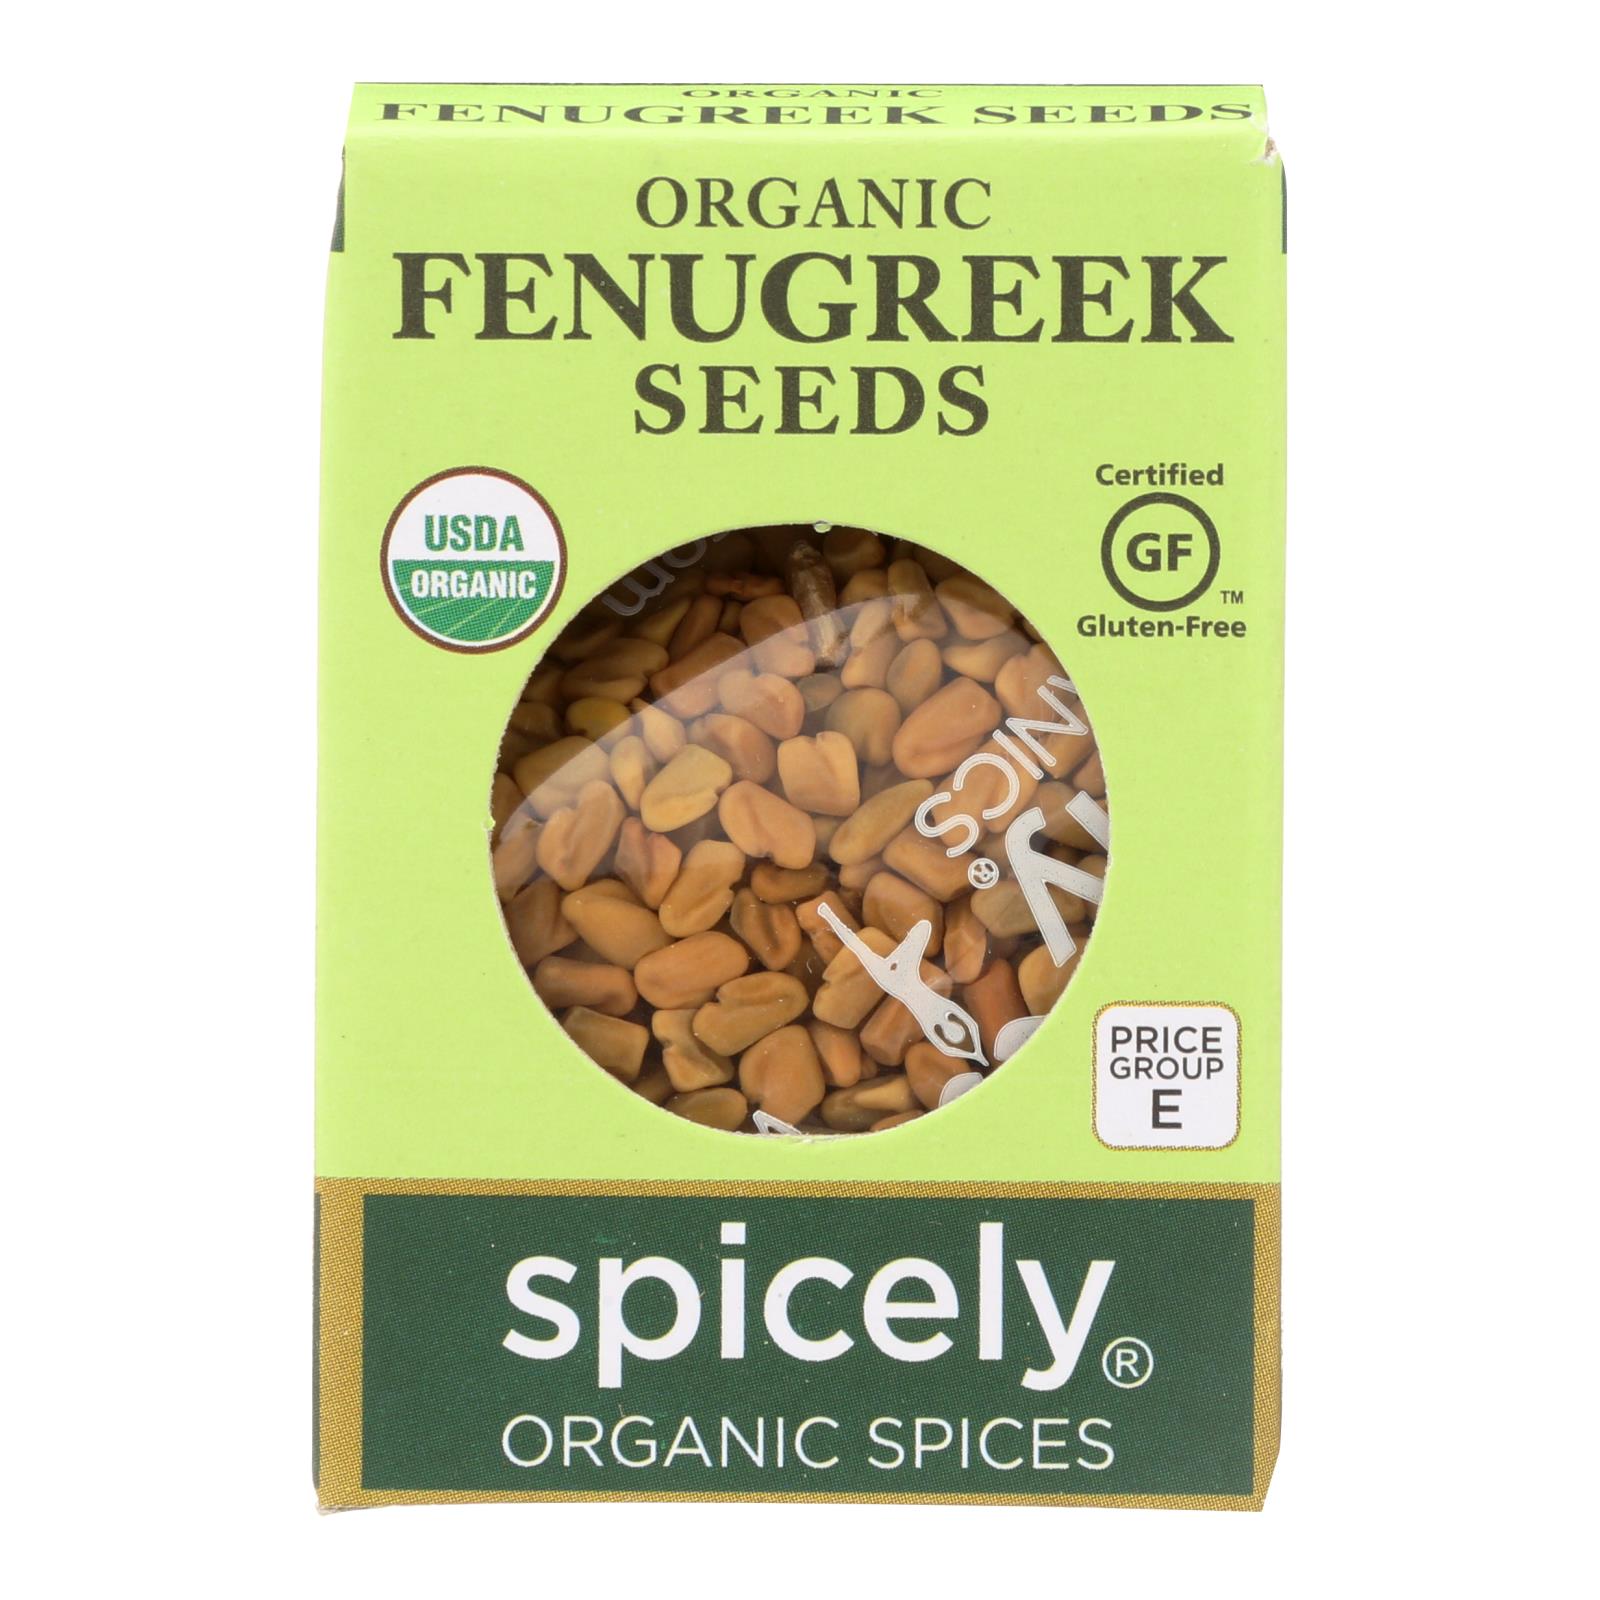 Spicely Organics - Organic Fenugreek Seeds - 6개 묶음상품 - 0.45 oz.